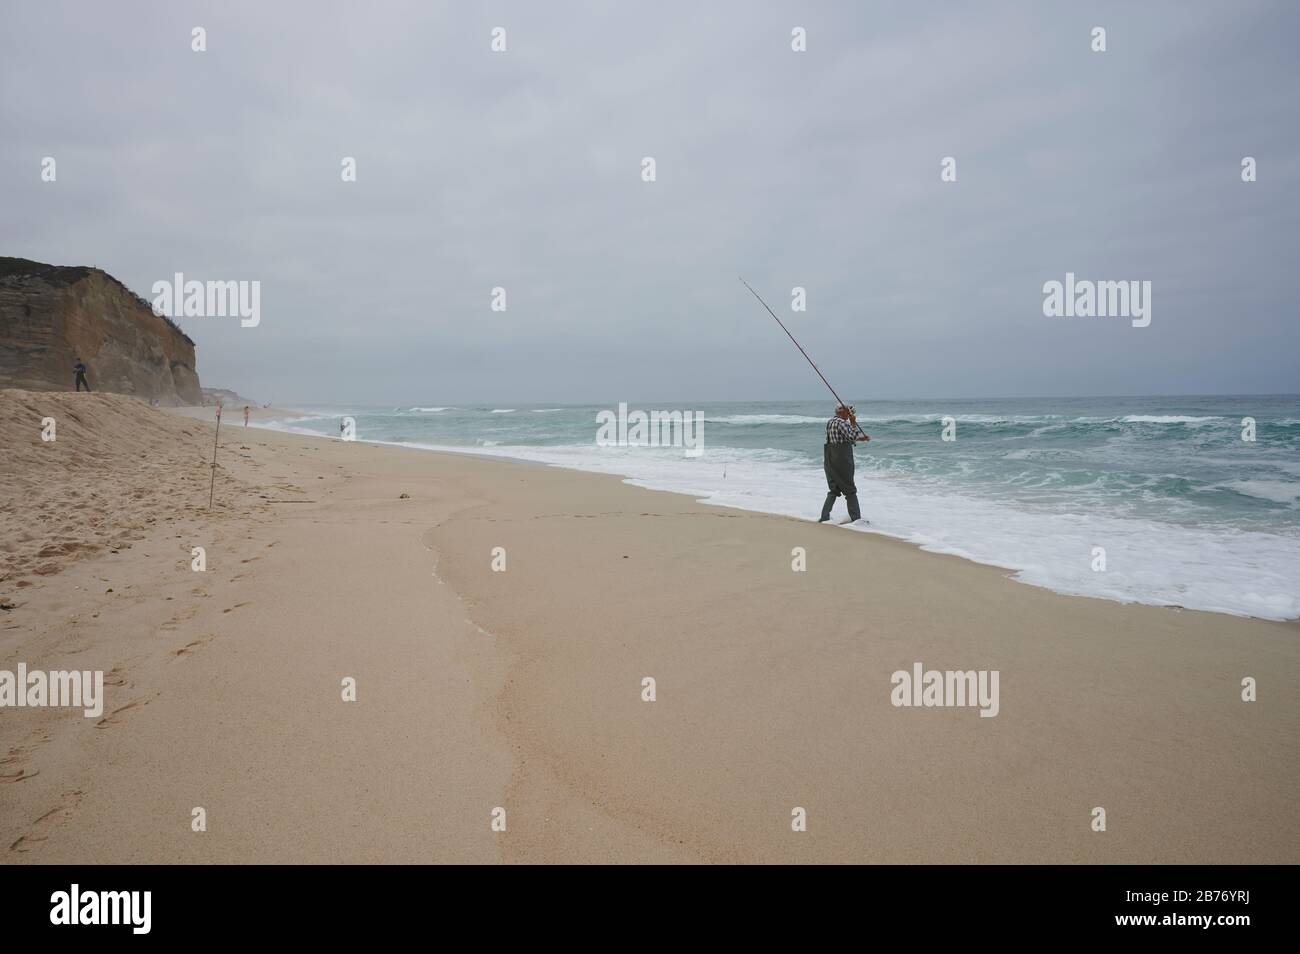 Fotos de Cañas de pescar instaladas en la playa al atardecer